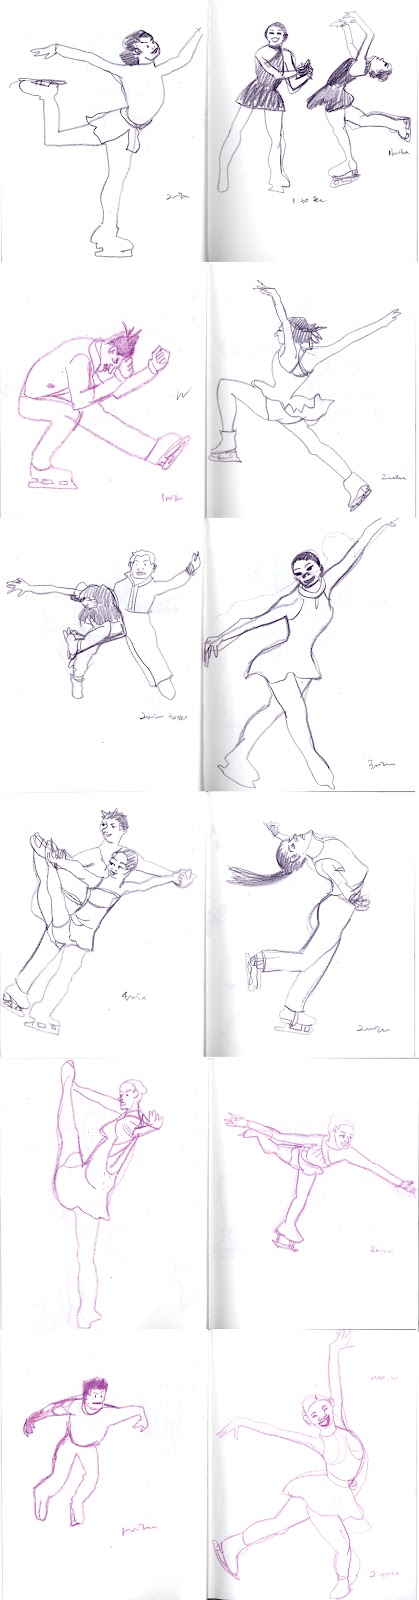 Figure Skating Drawing